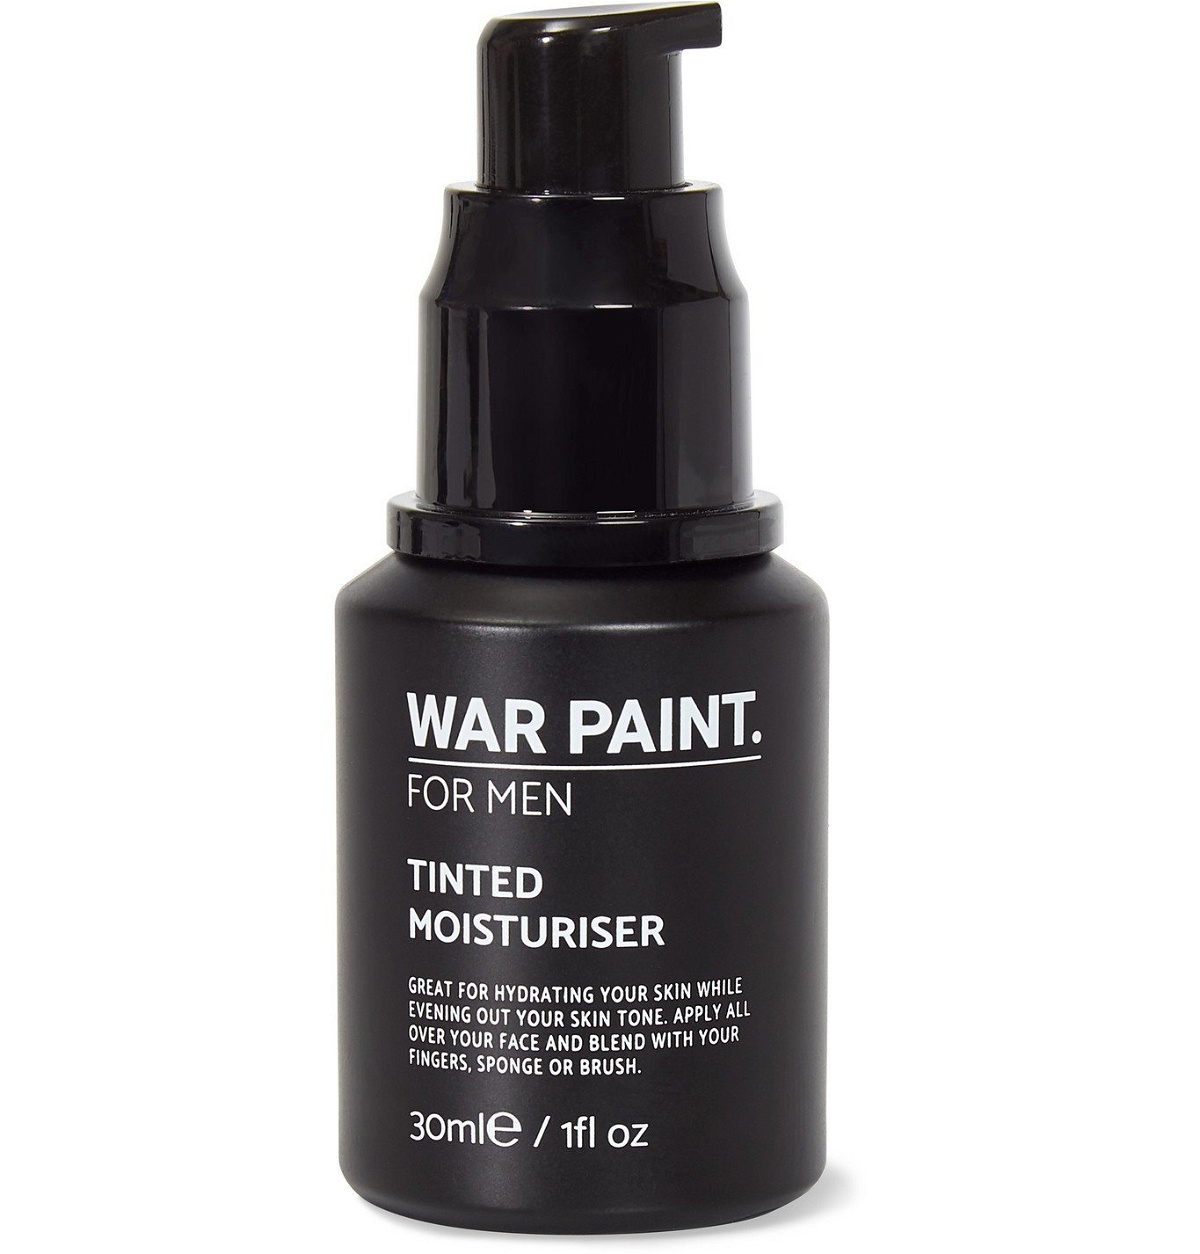 Photo: War Paint for Men - Tinted Moisturiser - Light, 30ml - Colorless